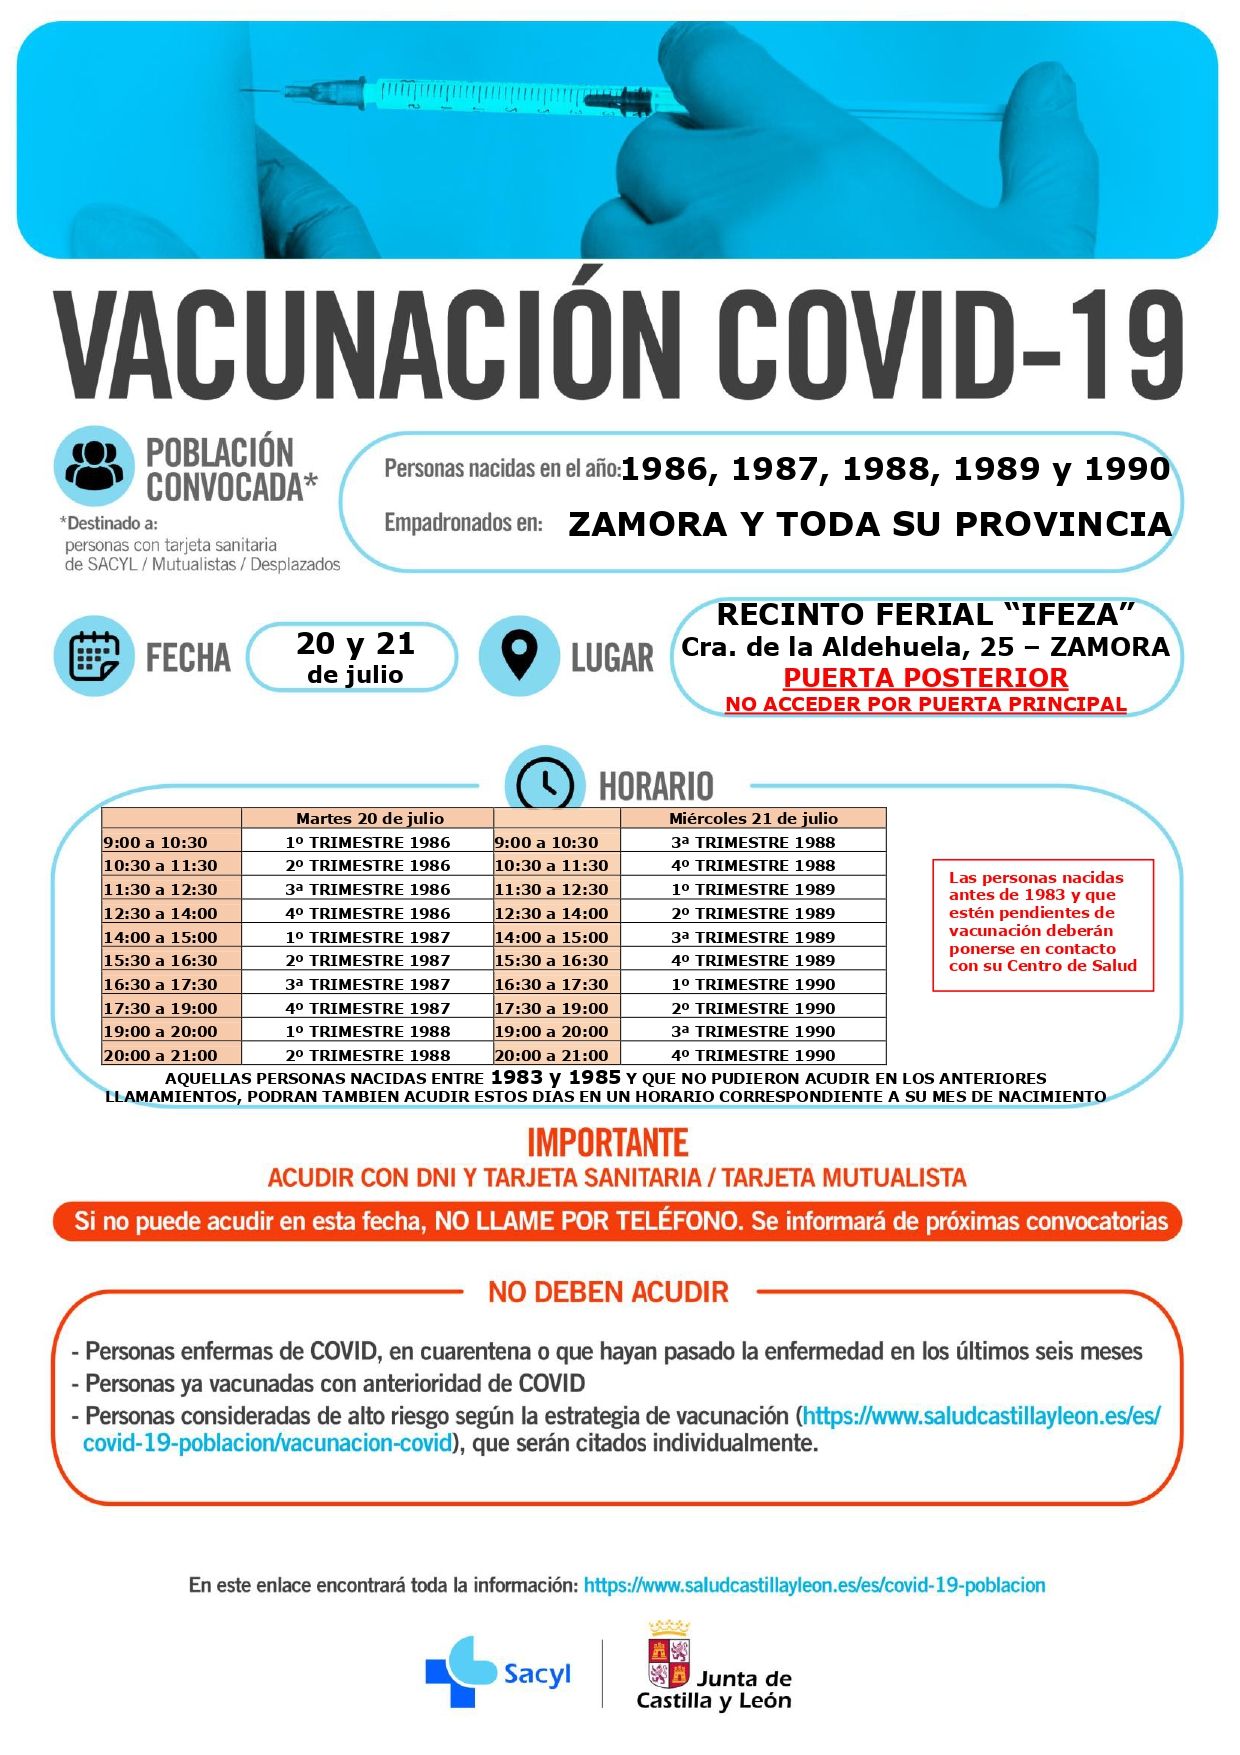 Calendario de vacunación en Zamora para los nacidos en 1986, 1987, 1988, 1989 y 1990.